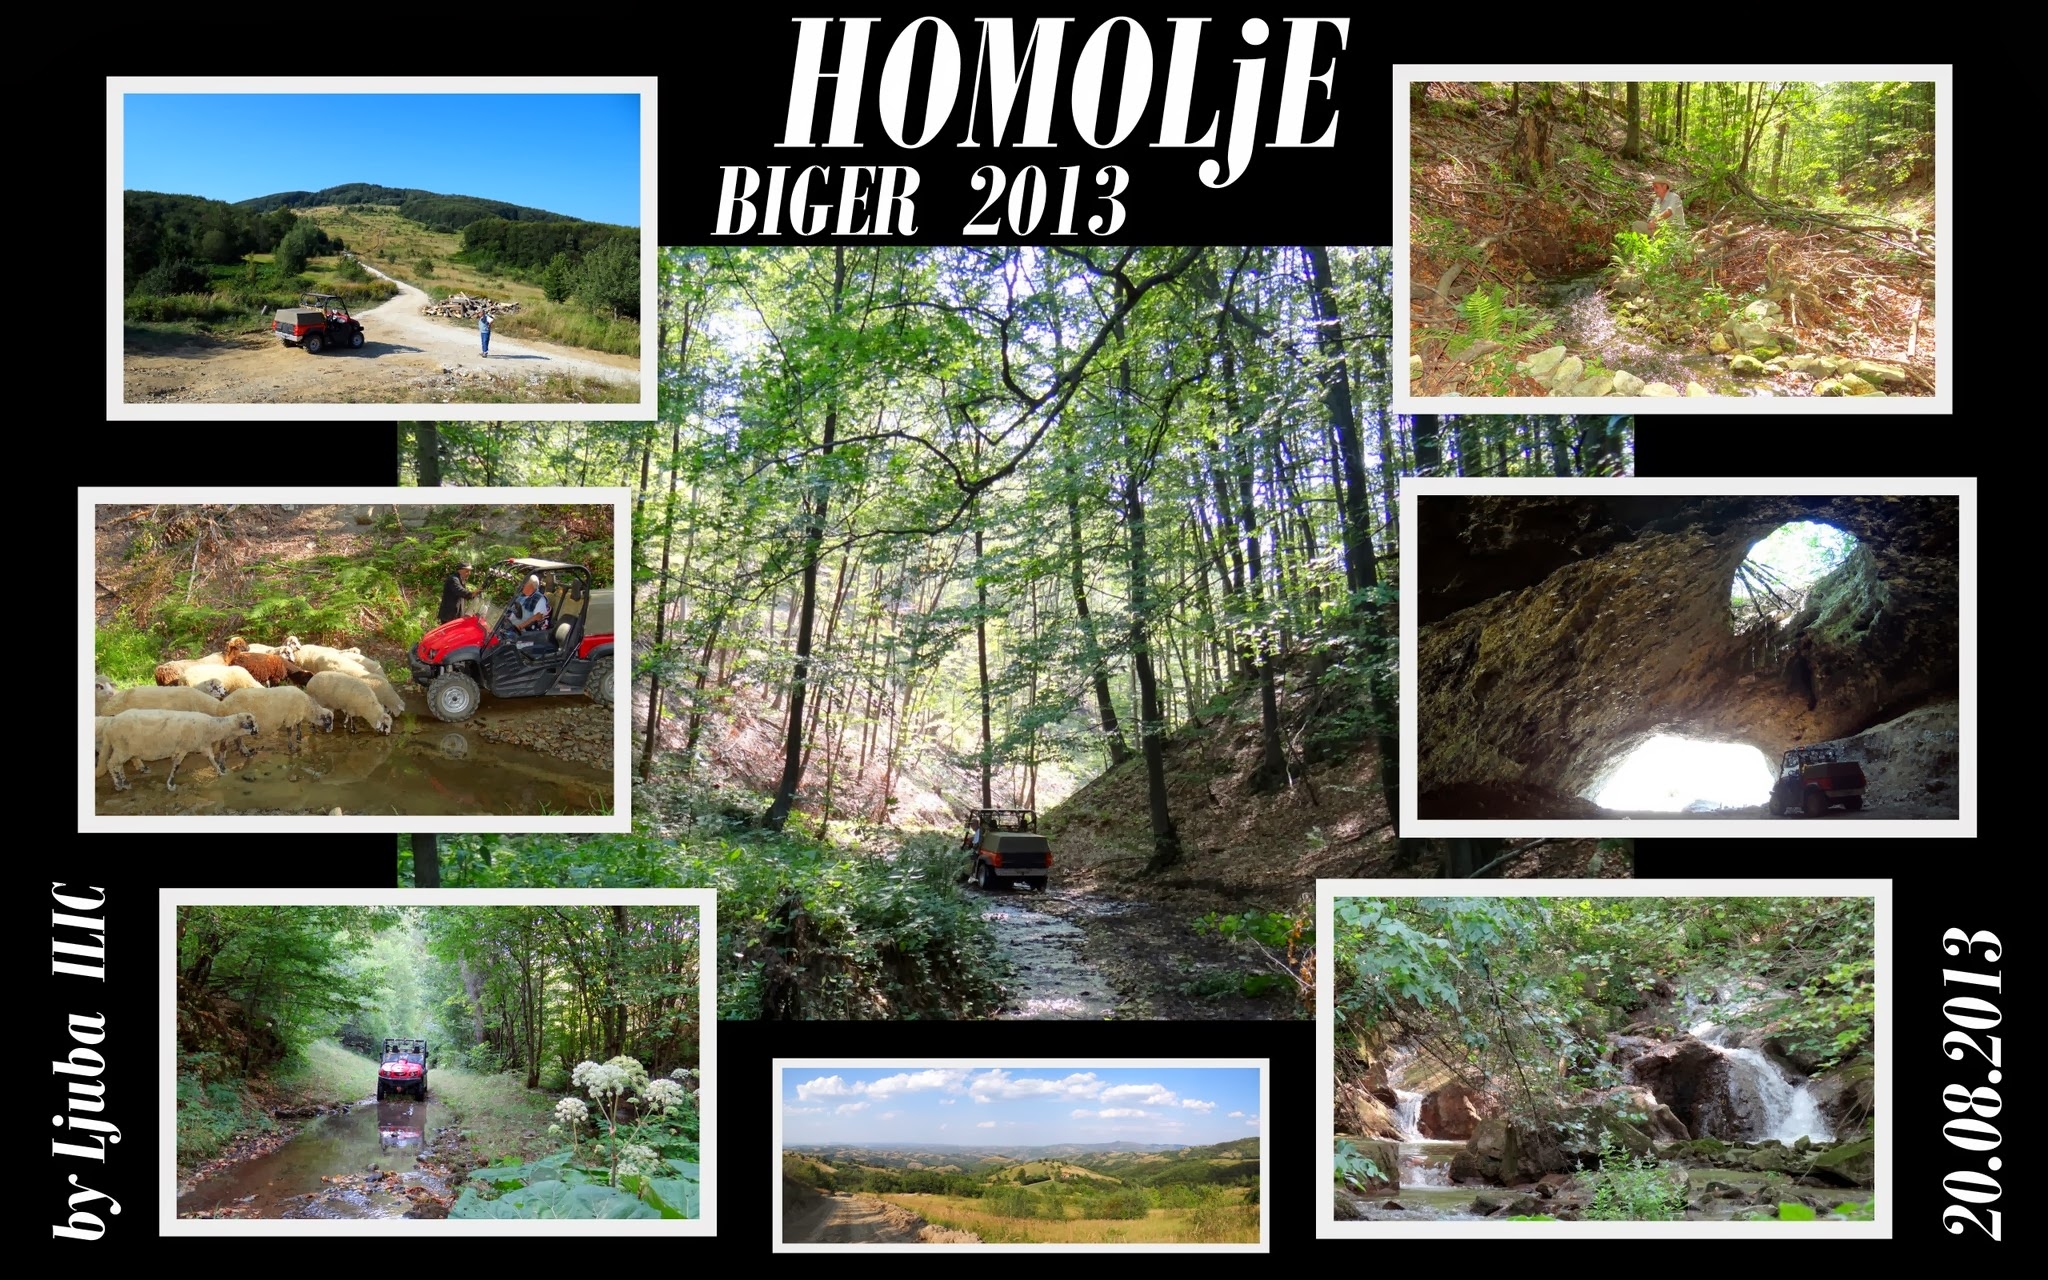 Homolje Biger - 2013 cover image